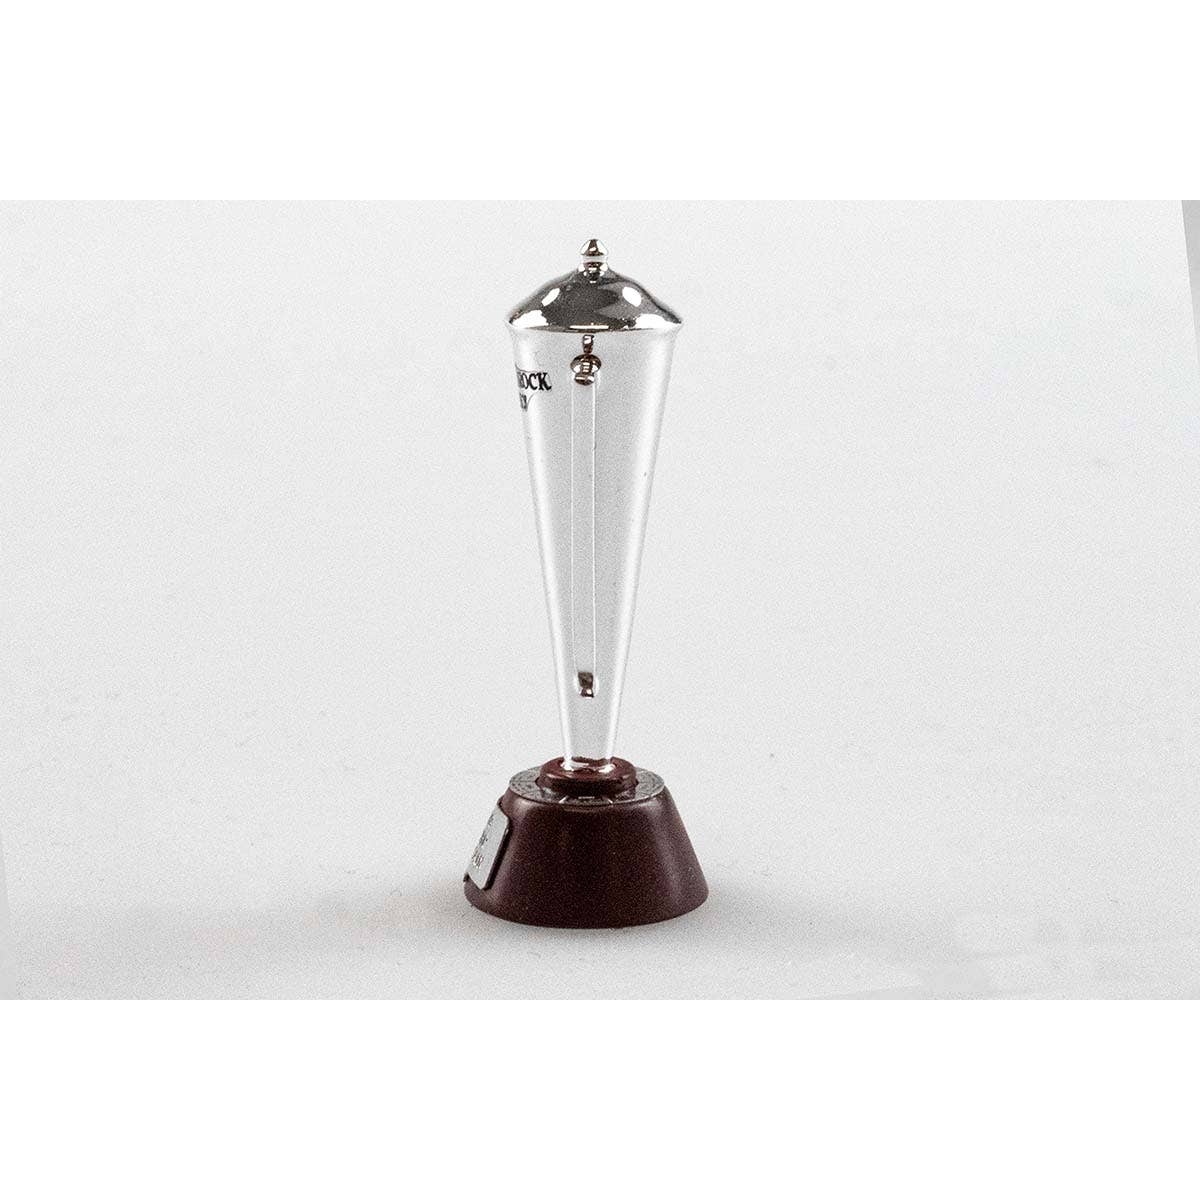 TROPHY - BATHURST WINNER - Peter Brock Trophy - 1:18 Scale Plastic Model Accessory